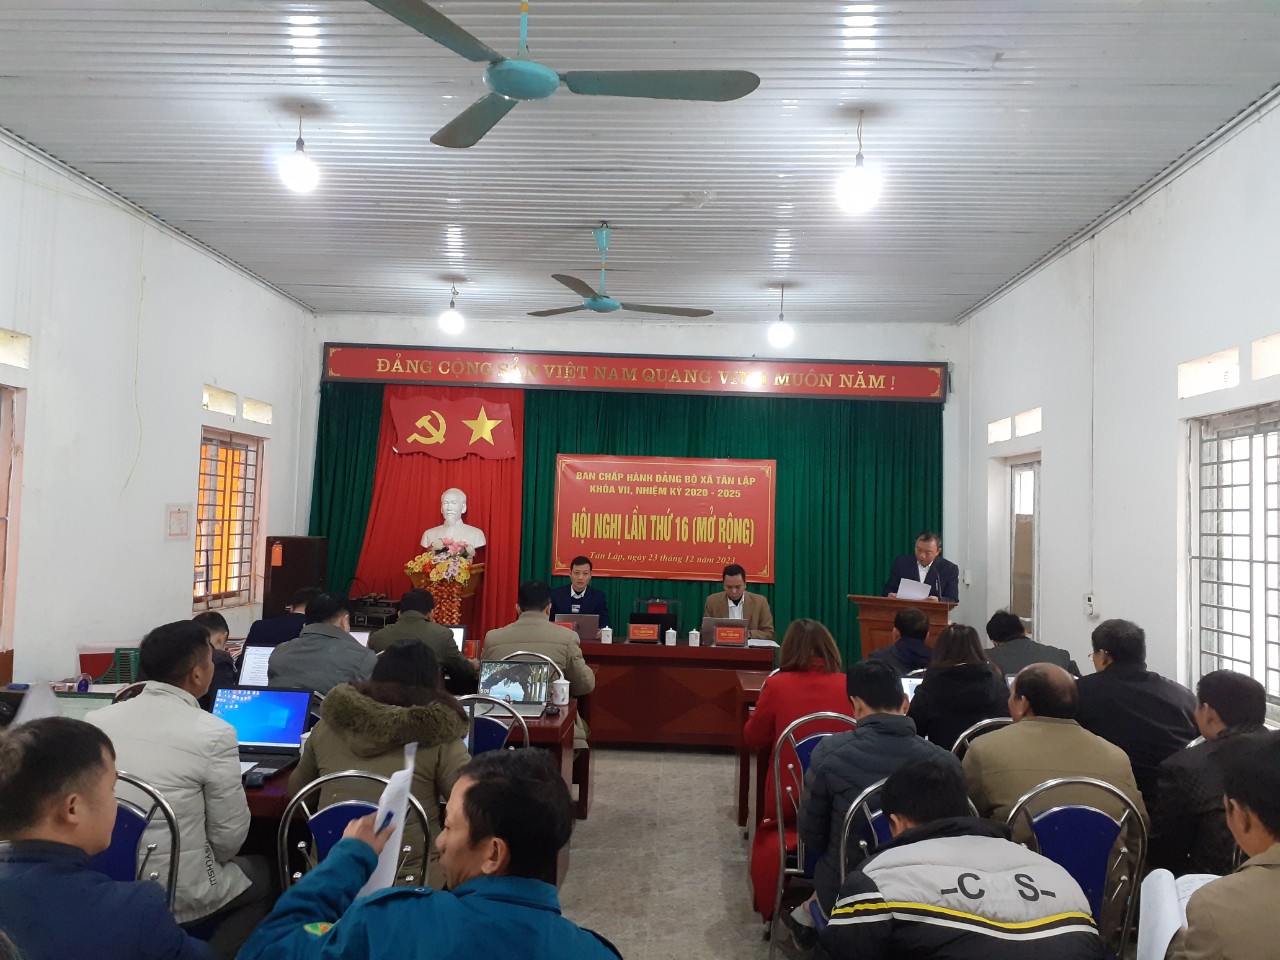 Đảng ủy xã Tân Lập tổ chức hội nghị Ban Chấp hành lần thứ 16 (mở rộng)